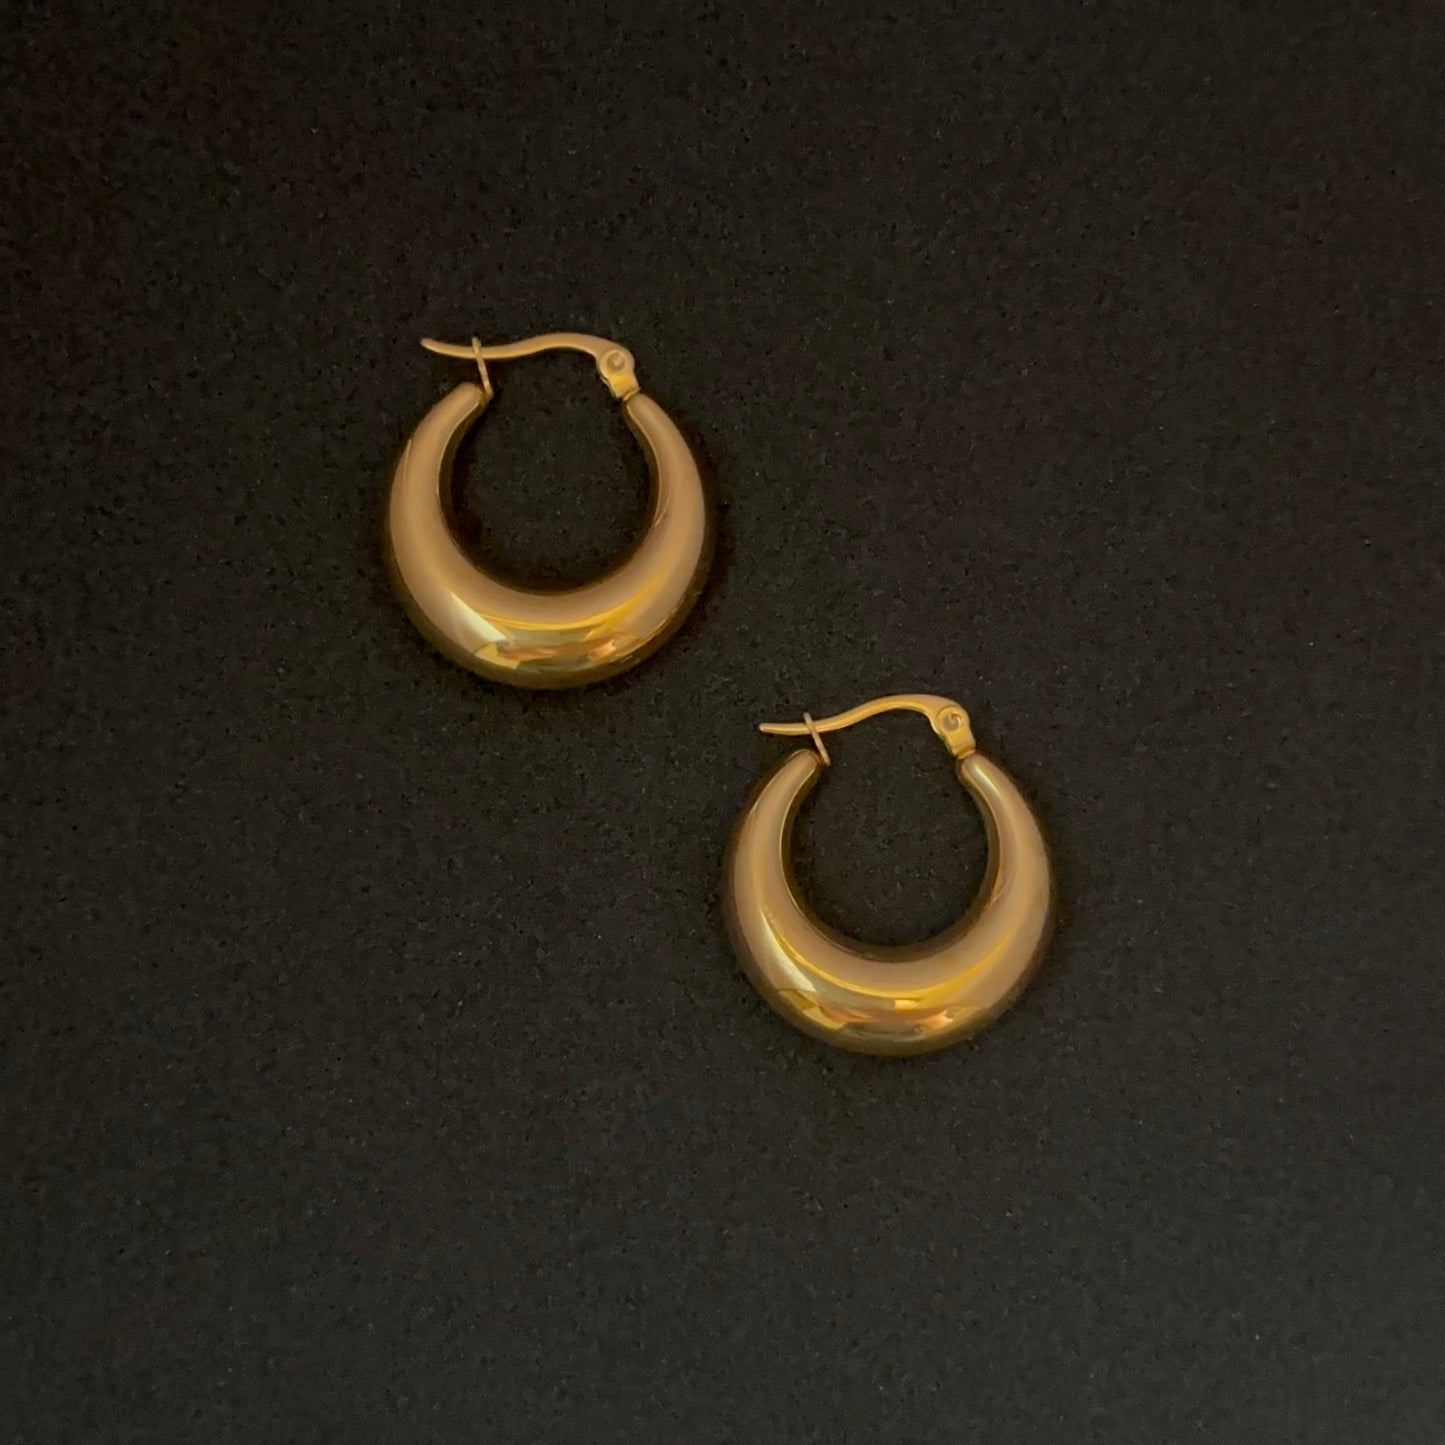 18K Gold Plated Chunky Hoop Earrings for Women